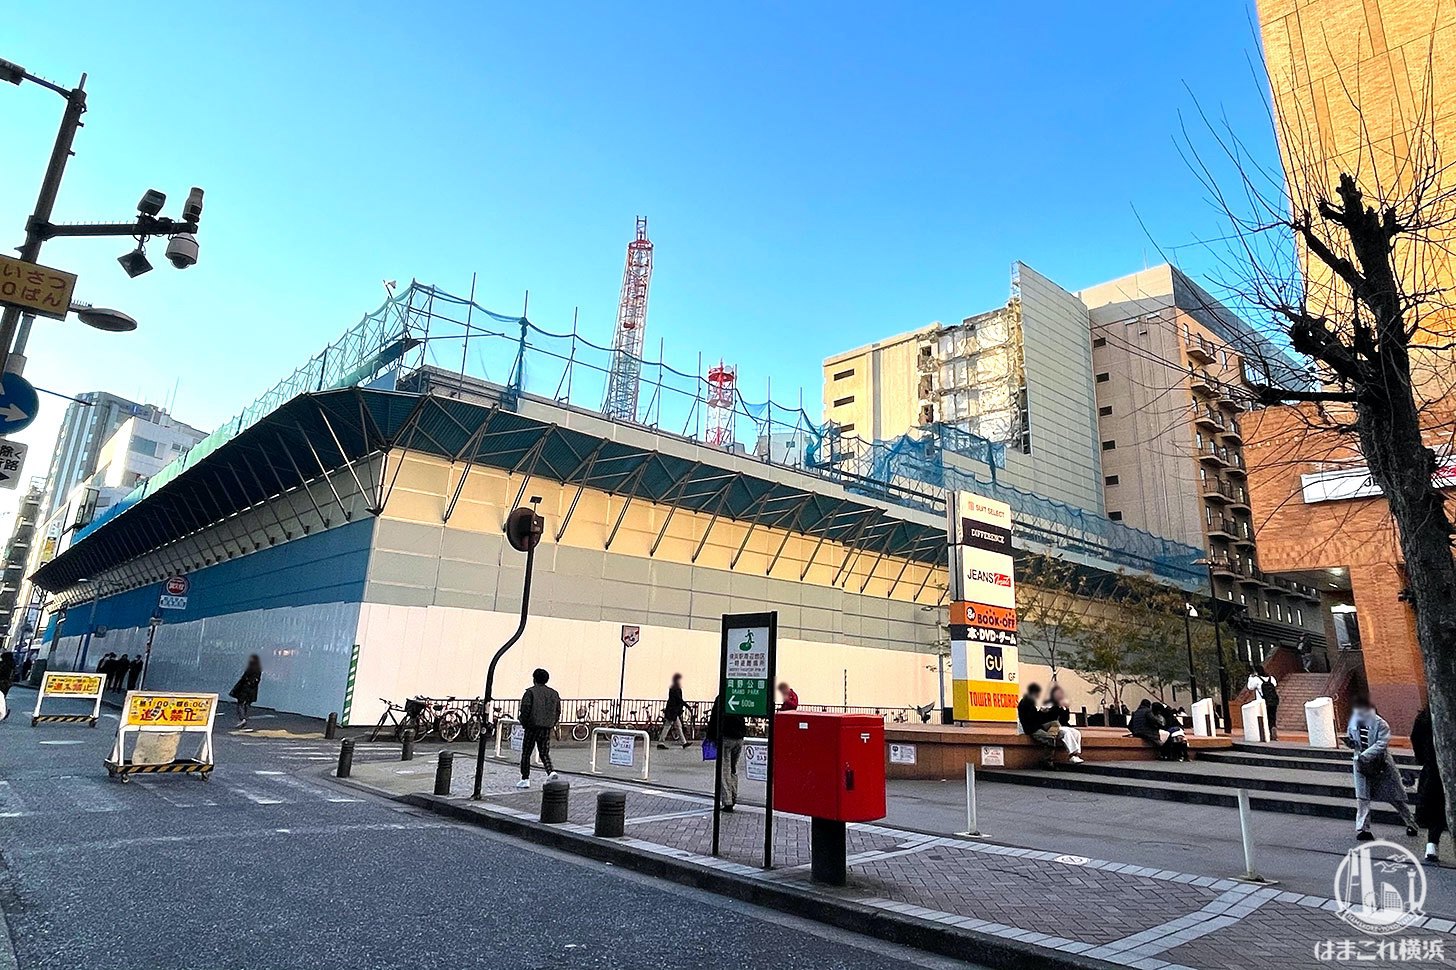 横浜駅西口 ダイエー 跡地に22階建てのビル25年1月に完成予定 はまこれ横浜